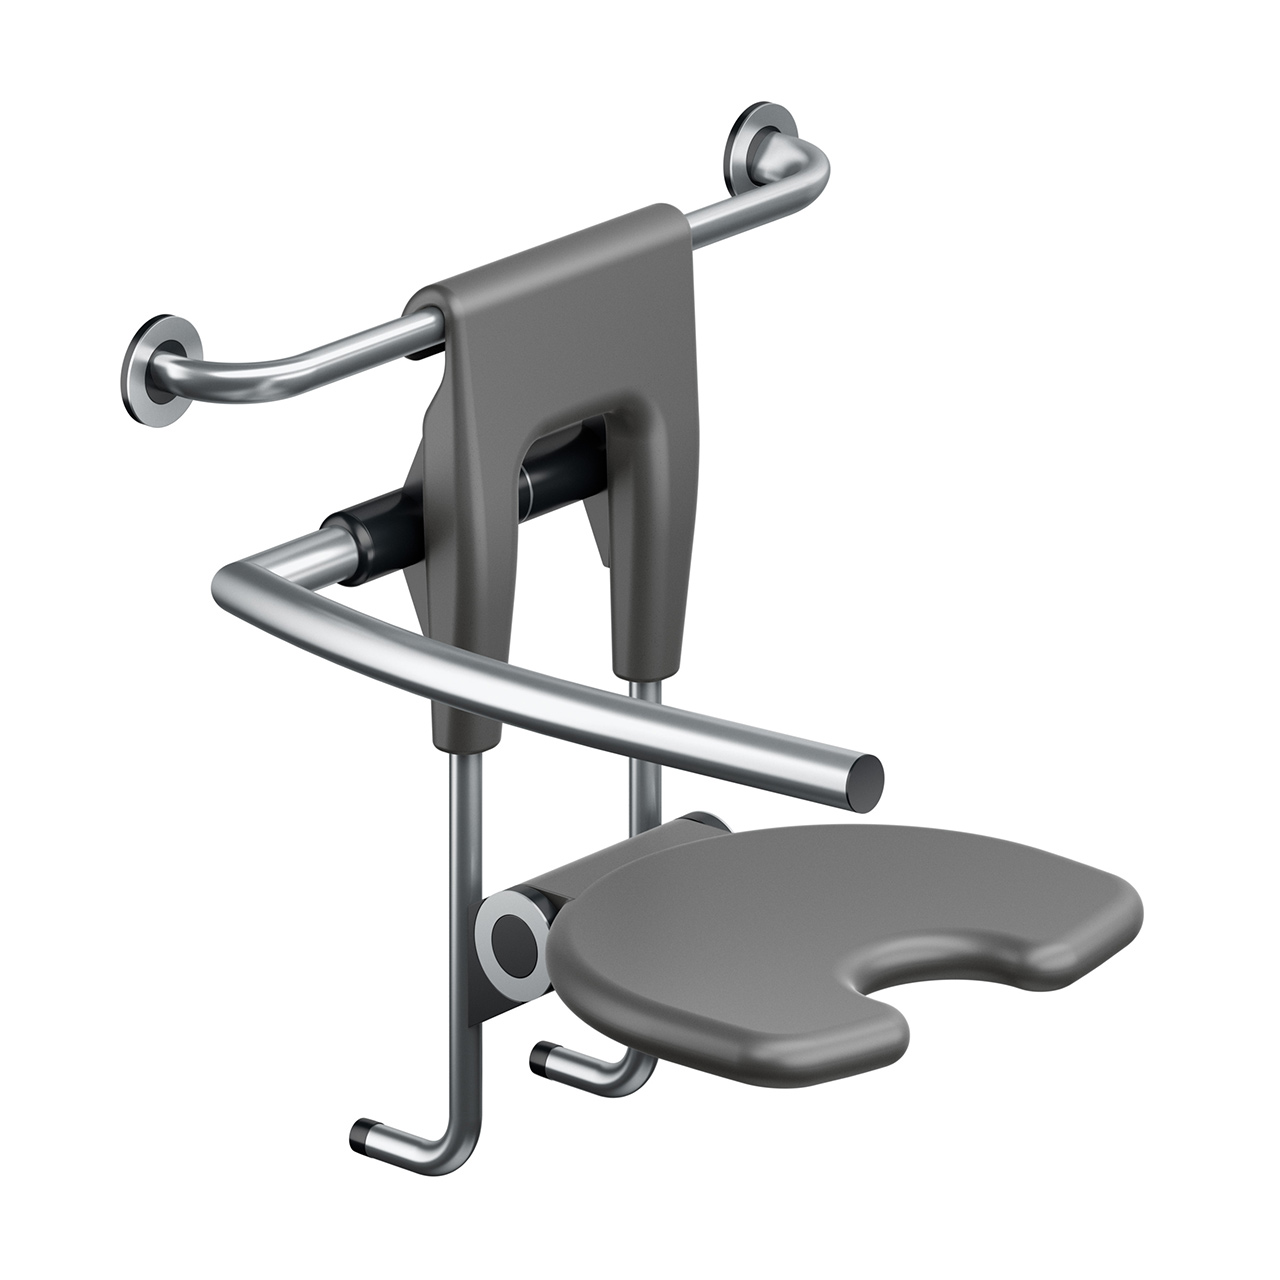 Duschklappsitz - Duschstuhl - mit Rückenlehne und Armlehne - FSB